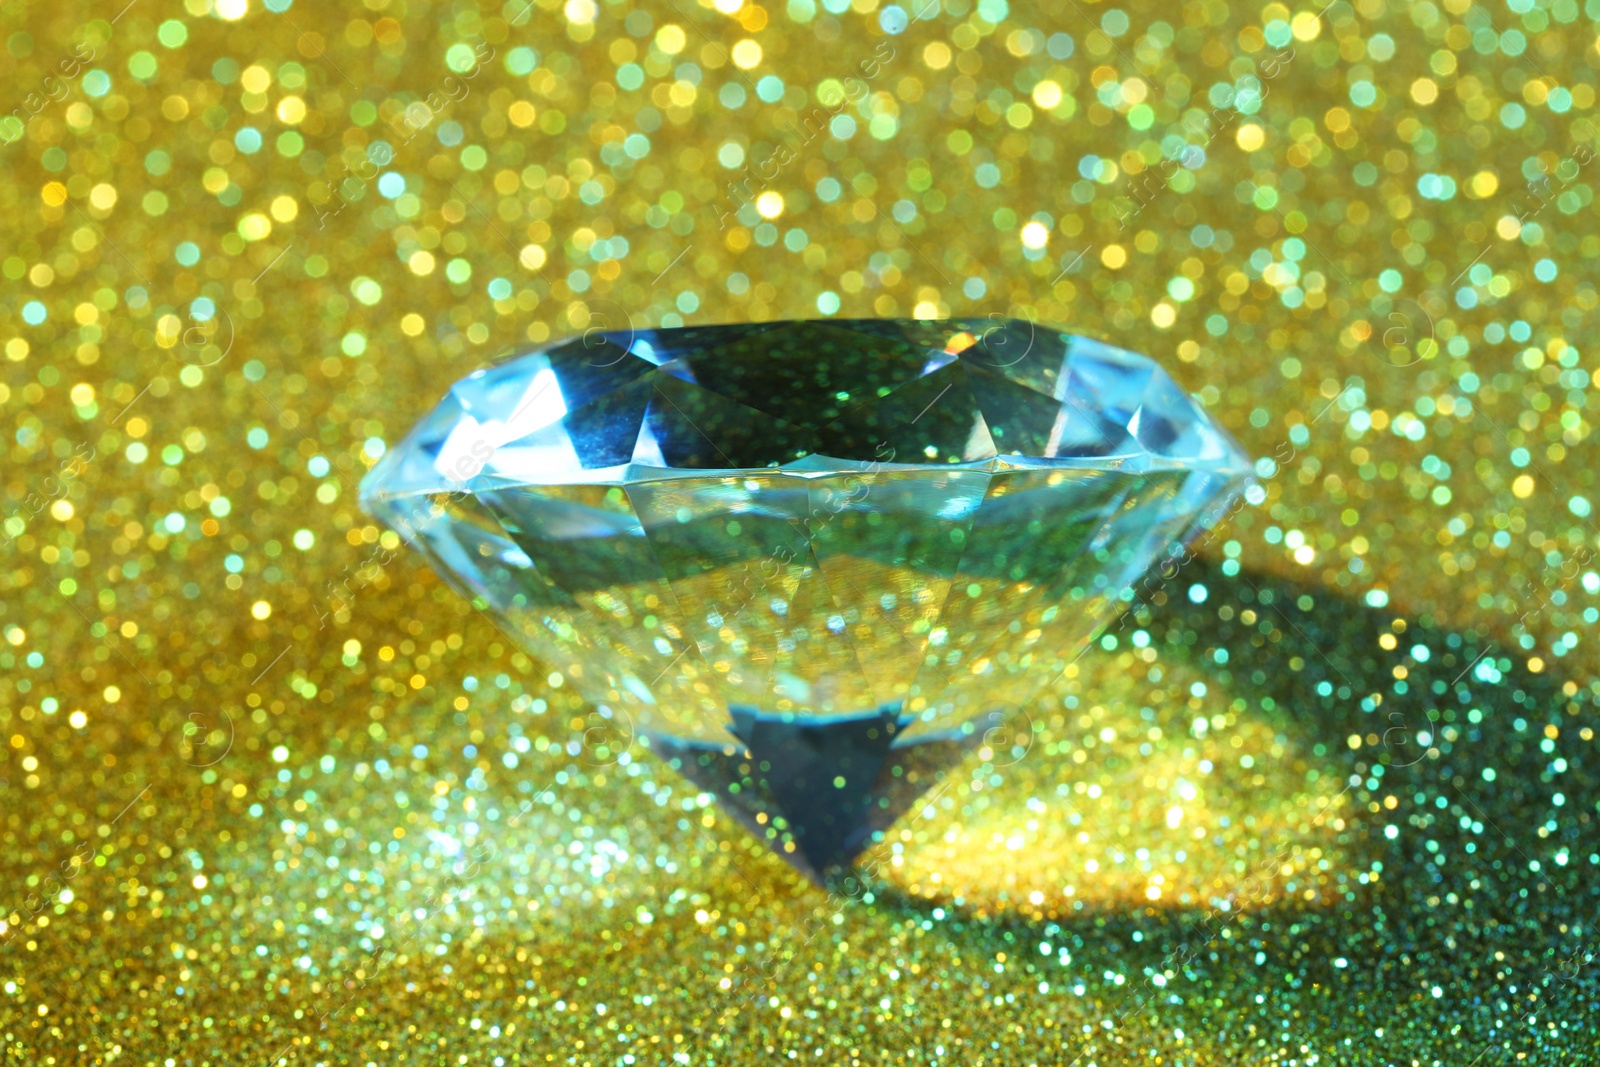 Photo of Beautiful dazzling diamond on glitter background, closeup